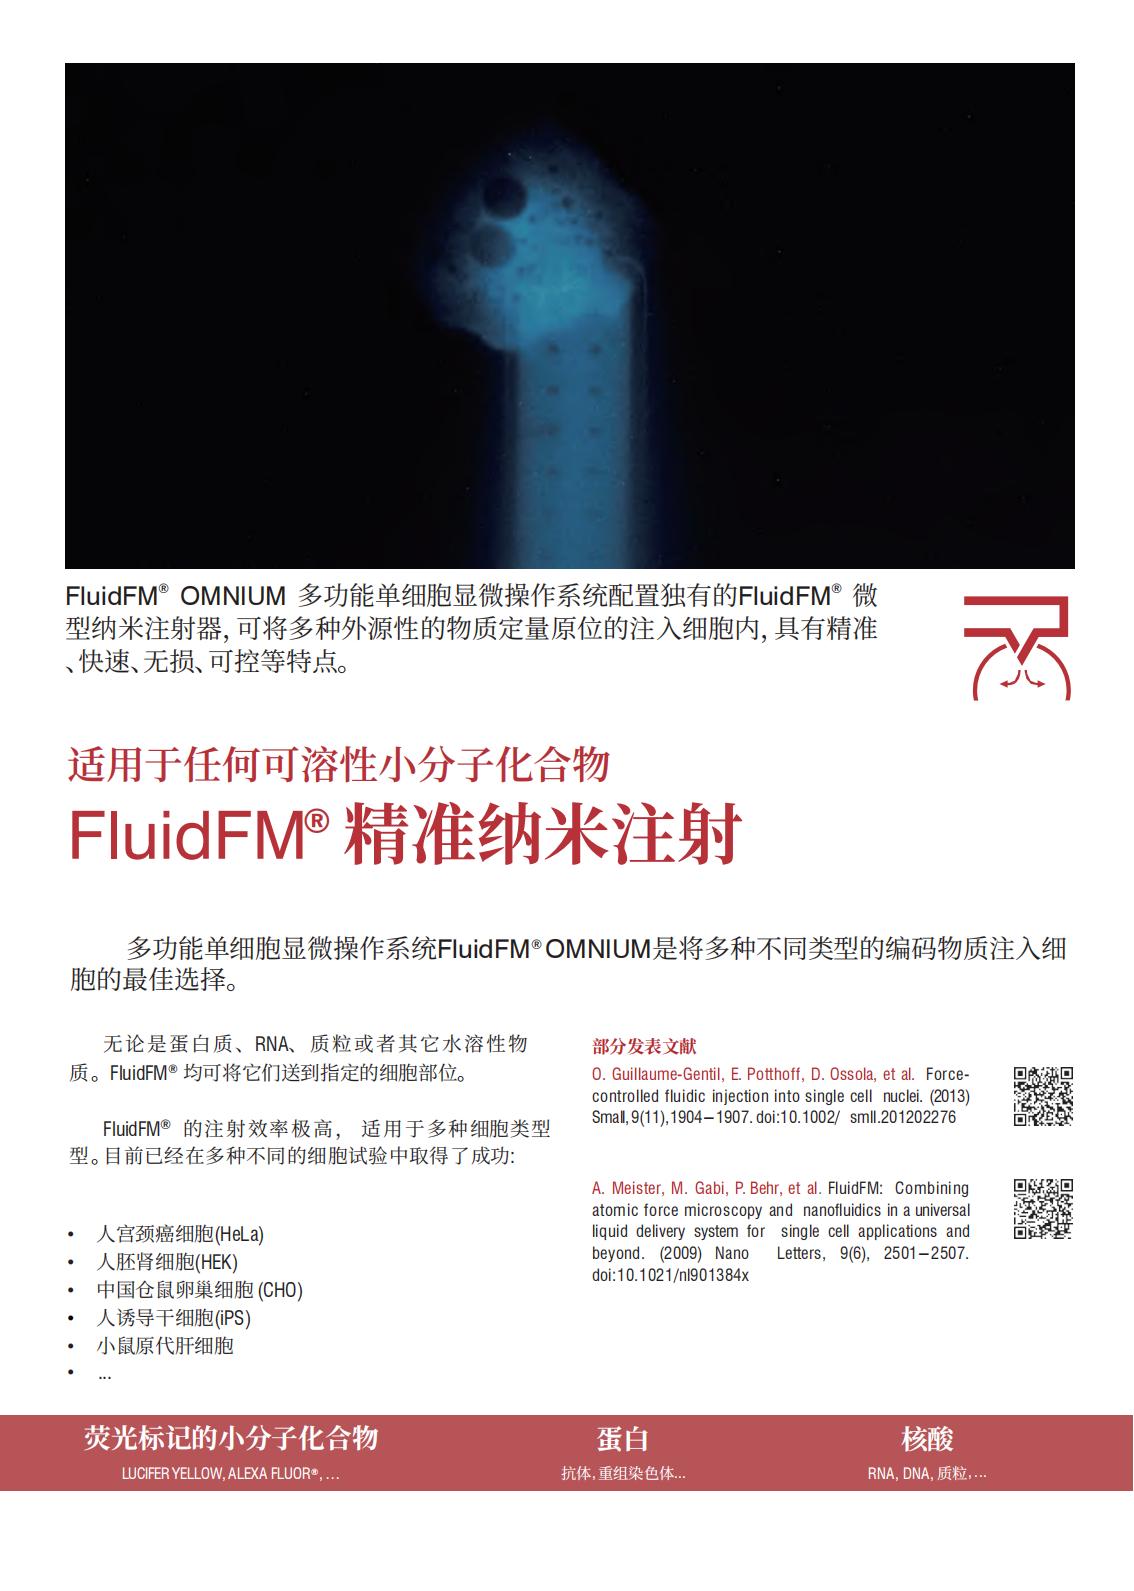 多功能单细胞显微操作系统FluidFM_OMNIUM(图4)